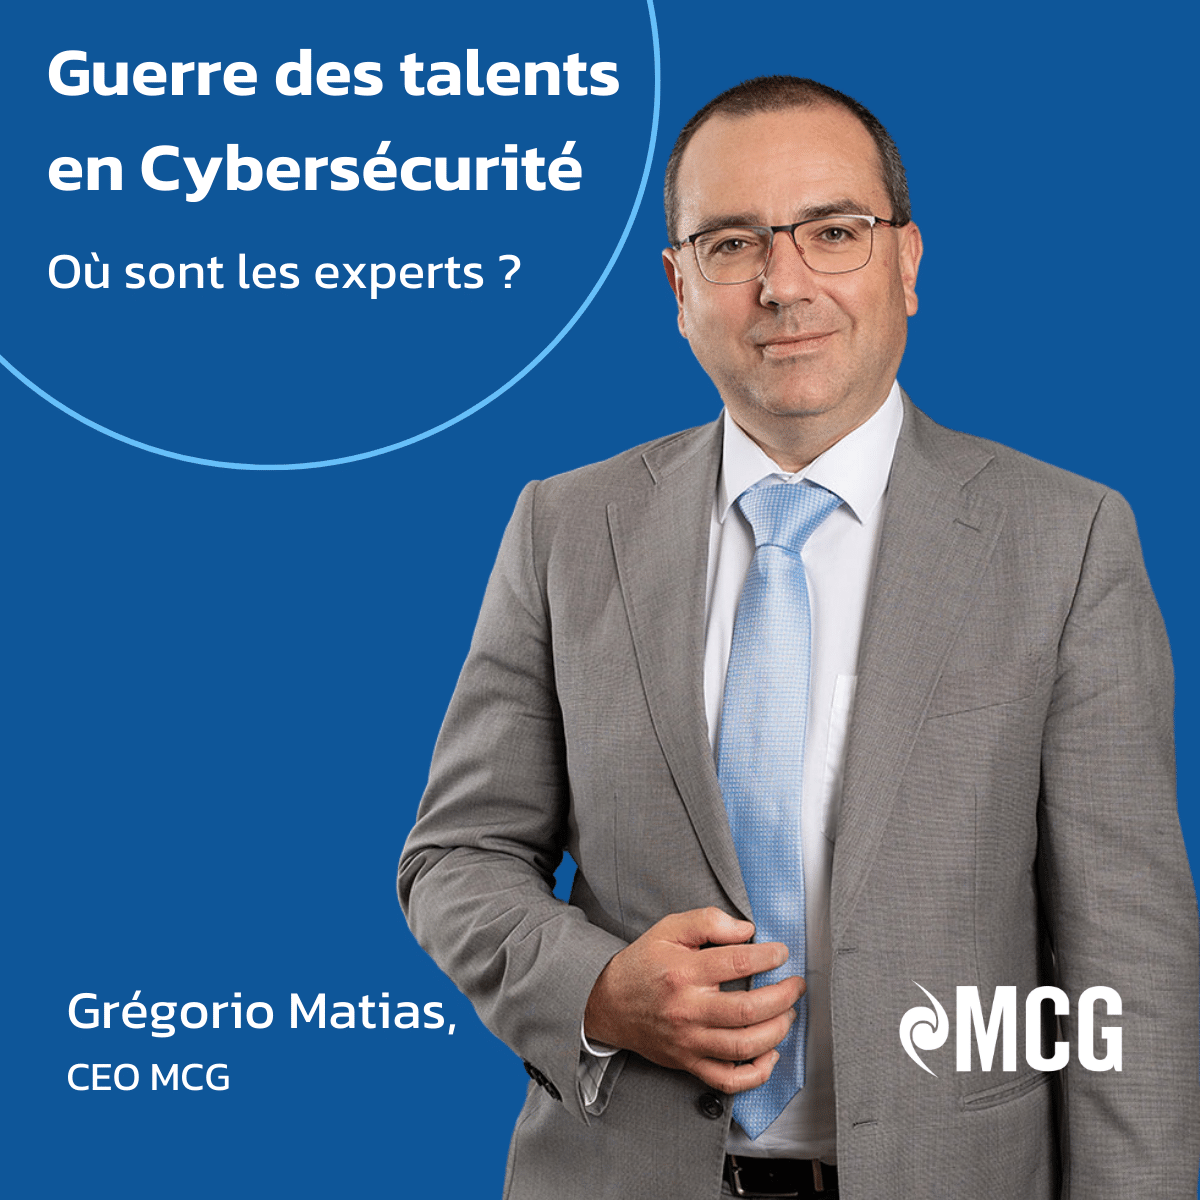 Guerre des talents dans le numérique et plus spécialement dans l’IT : carte blanche à Grégorio Matias, CEO de MCG (Matias Consulting Group) et Consultant en cybersécurité